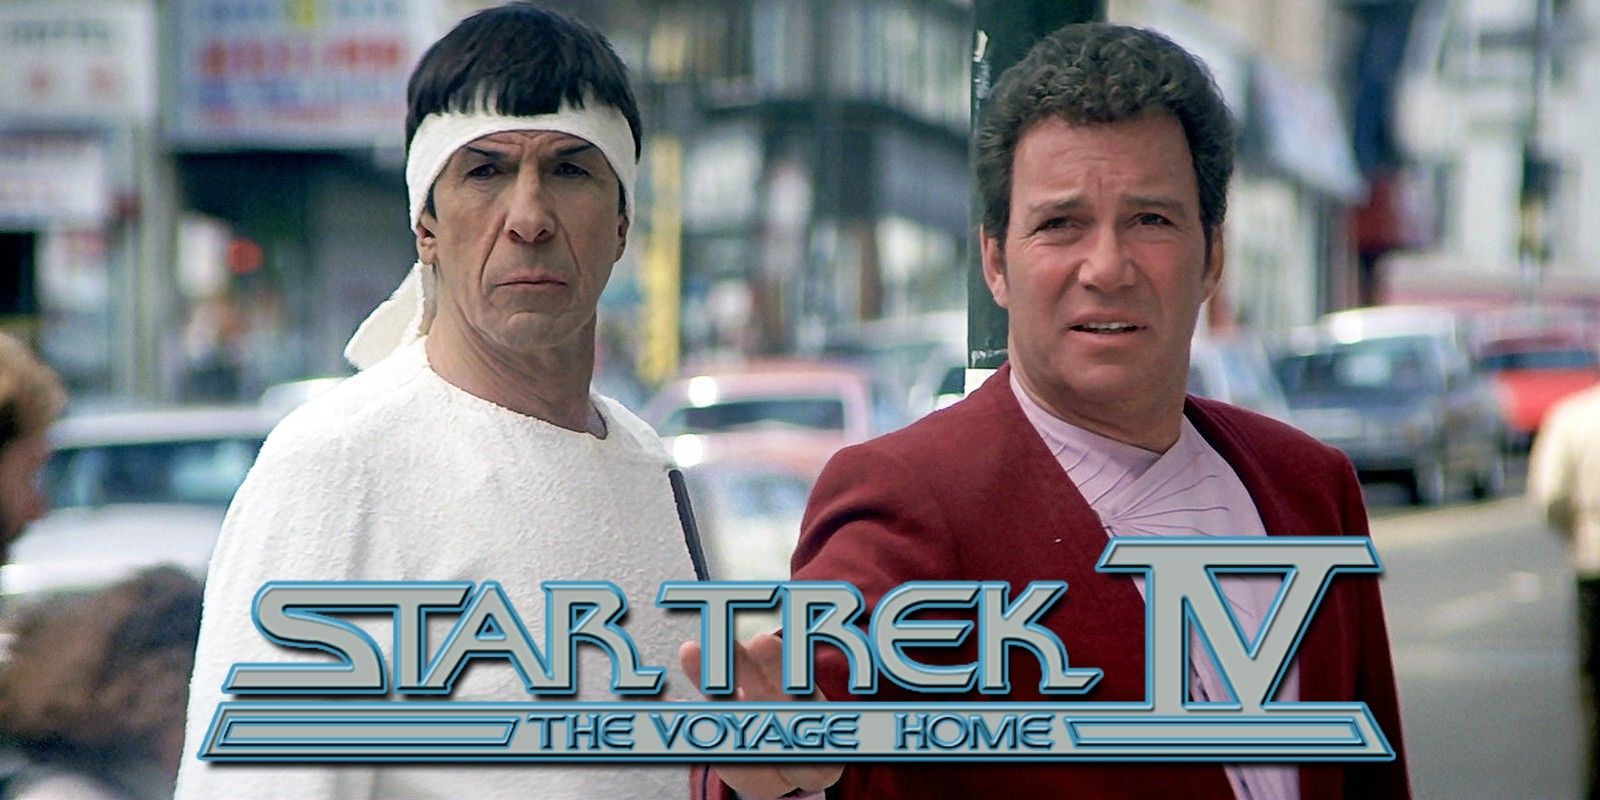 Leonard Nimoy as Spock and William Shatner as Kirk in Star Trek Voyage Home